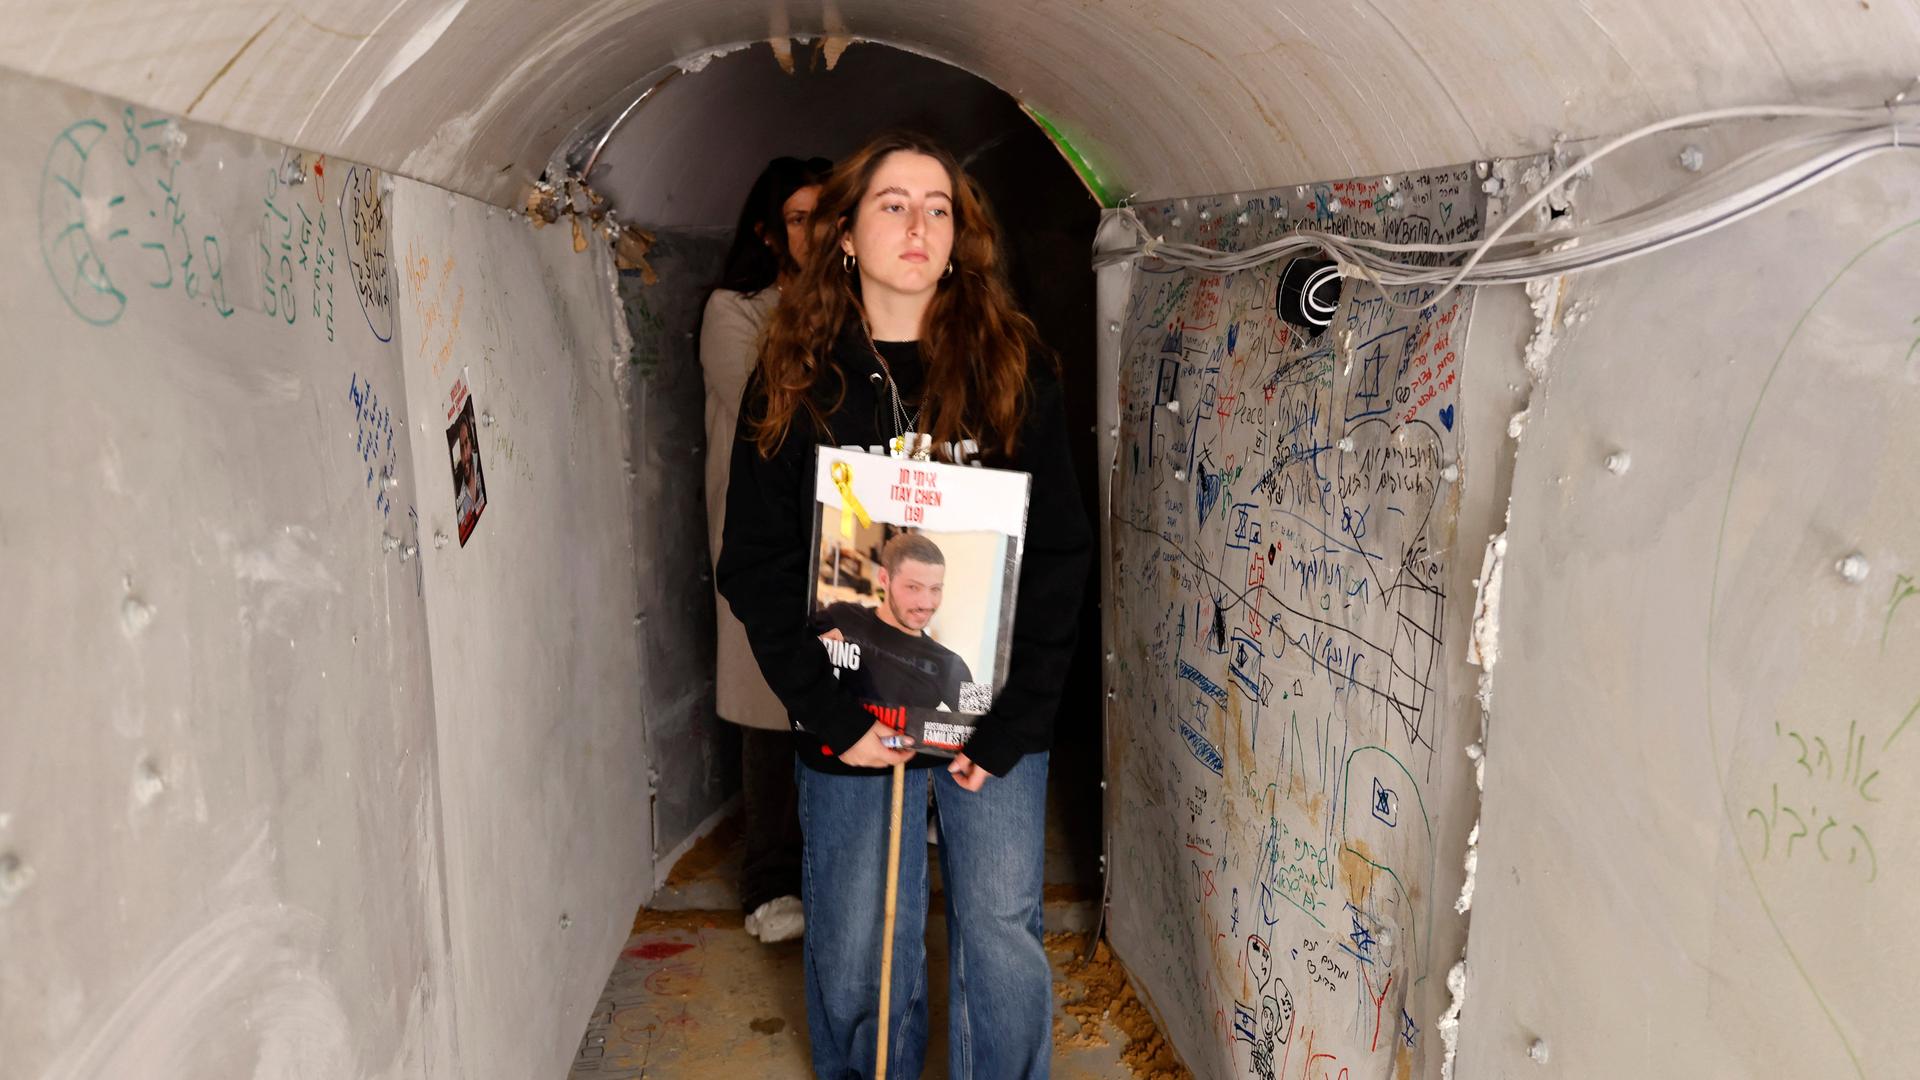 Angehörige tragen das Bild einer Hamas-Geisel durch den nachgebauten Tunnel.